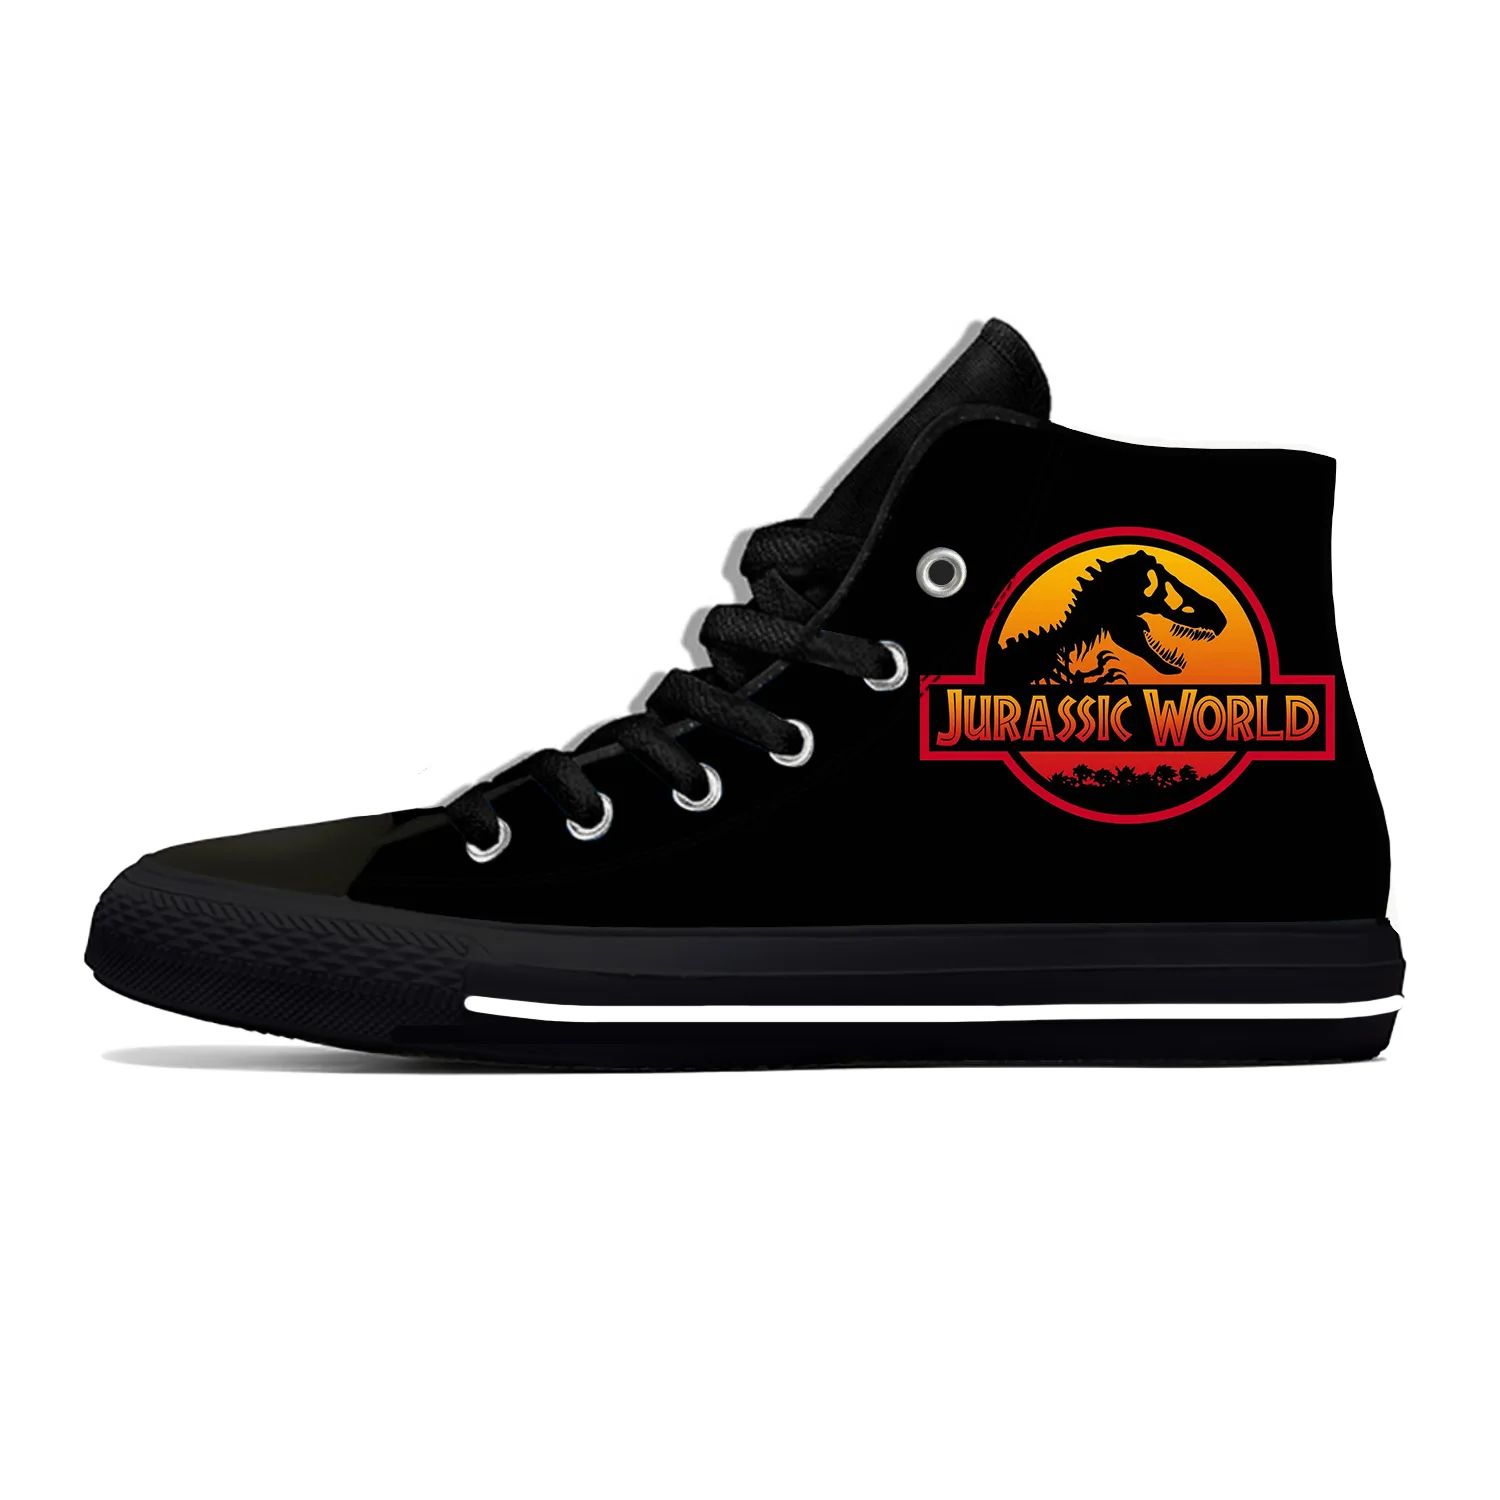 Color:Jurassic Park14Shoe Size:9.5